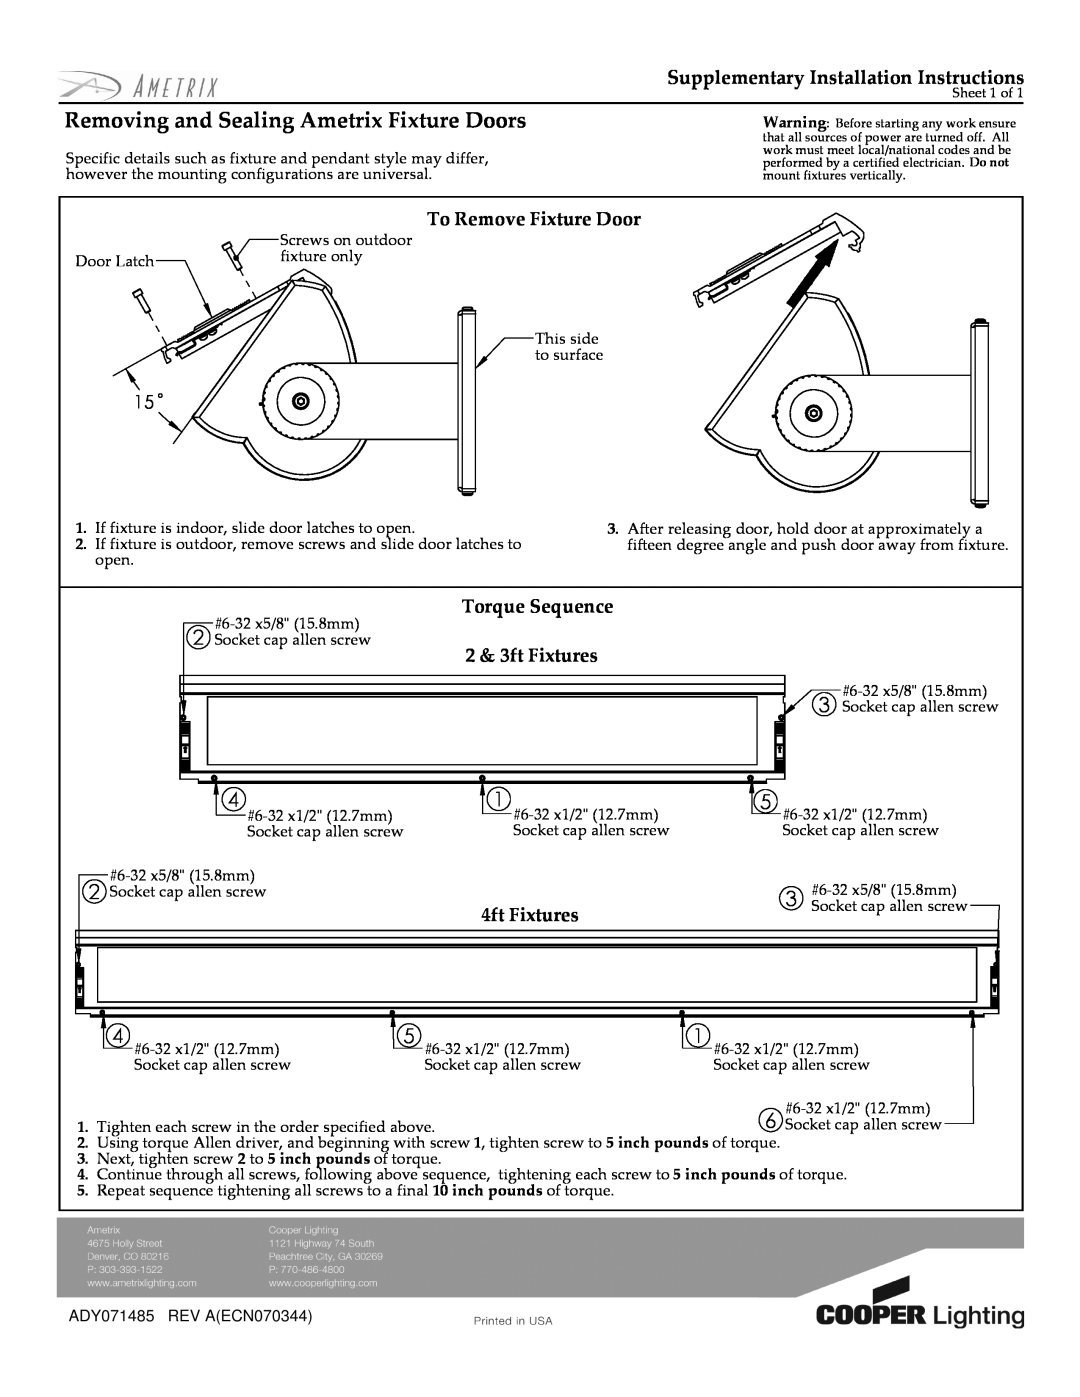 Cooper Lighting installation instructions Removing and Sealing Ametrix Fixture Doors, To Remove Fixture Door 